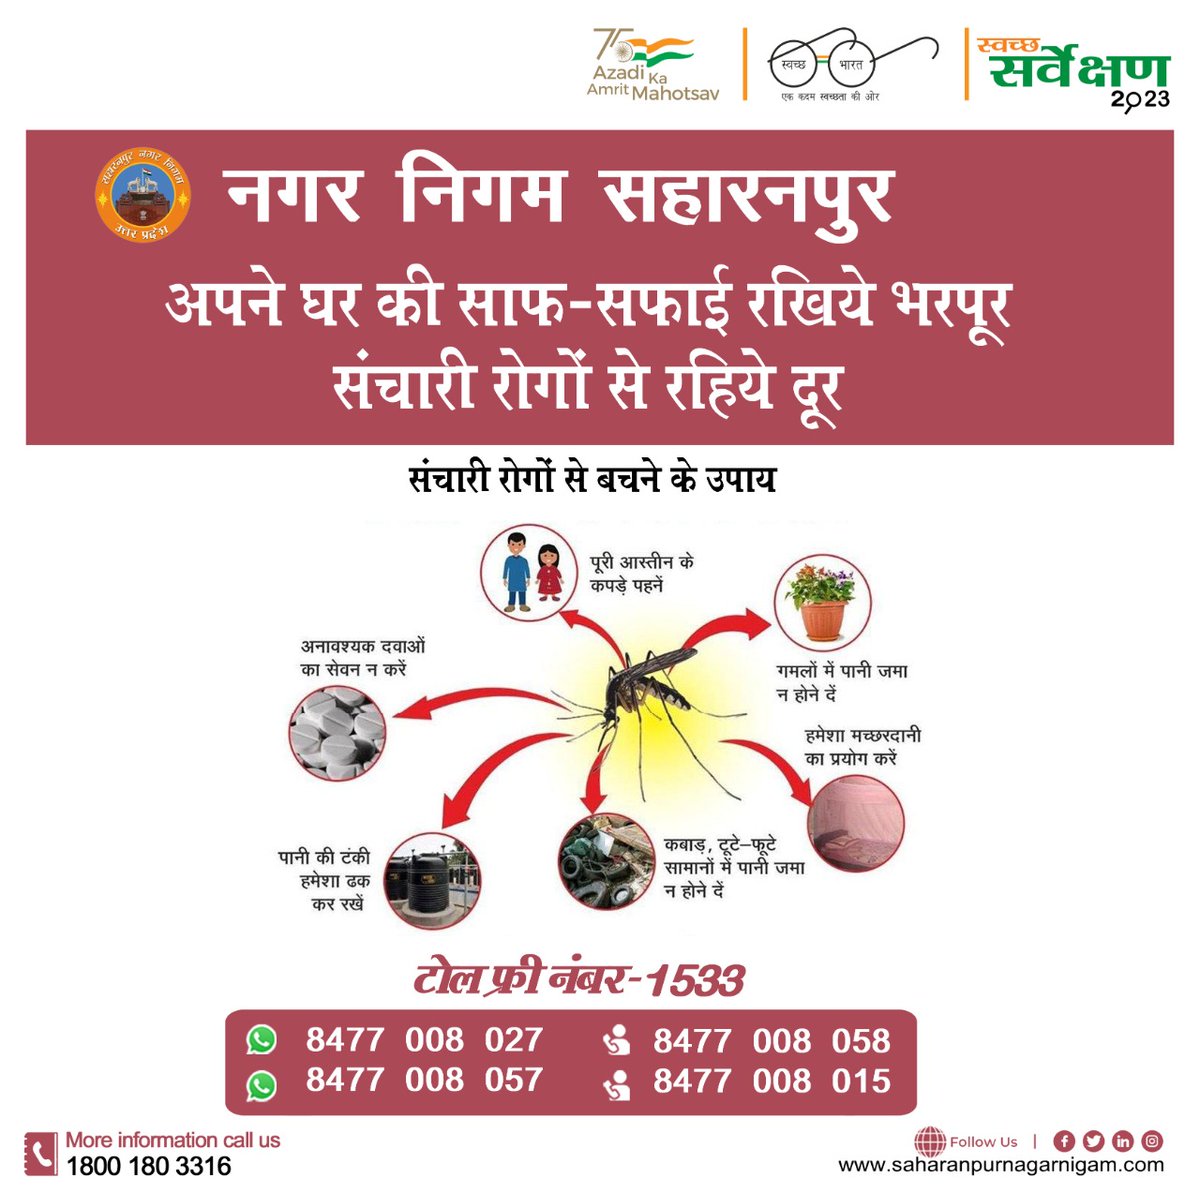 ULB Code :- 800630

🪰🦟❌#संचारीरोगनियंत्रण_अभियान
#स्वच्छ_सहारनपुर_सुन्दर_सहारनपुर
'नगर निगम सहारनपुर''
'वातावरण को स्वच्छ बनाएंगे, संचारी रोगों को भगाएंगे'

#sancharirogniyantaranabhiyan #swachhsurvekshan2023
#CleaningUp